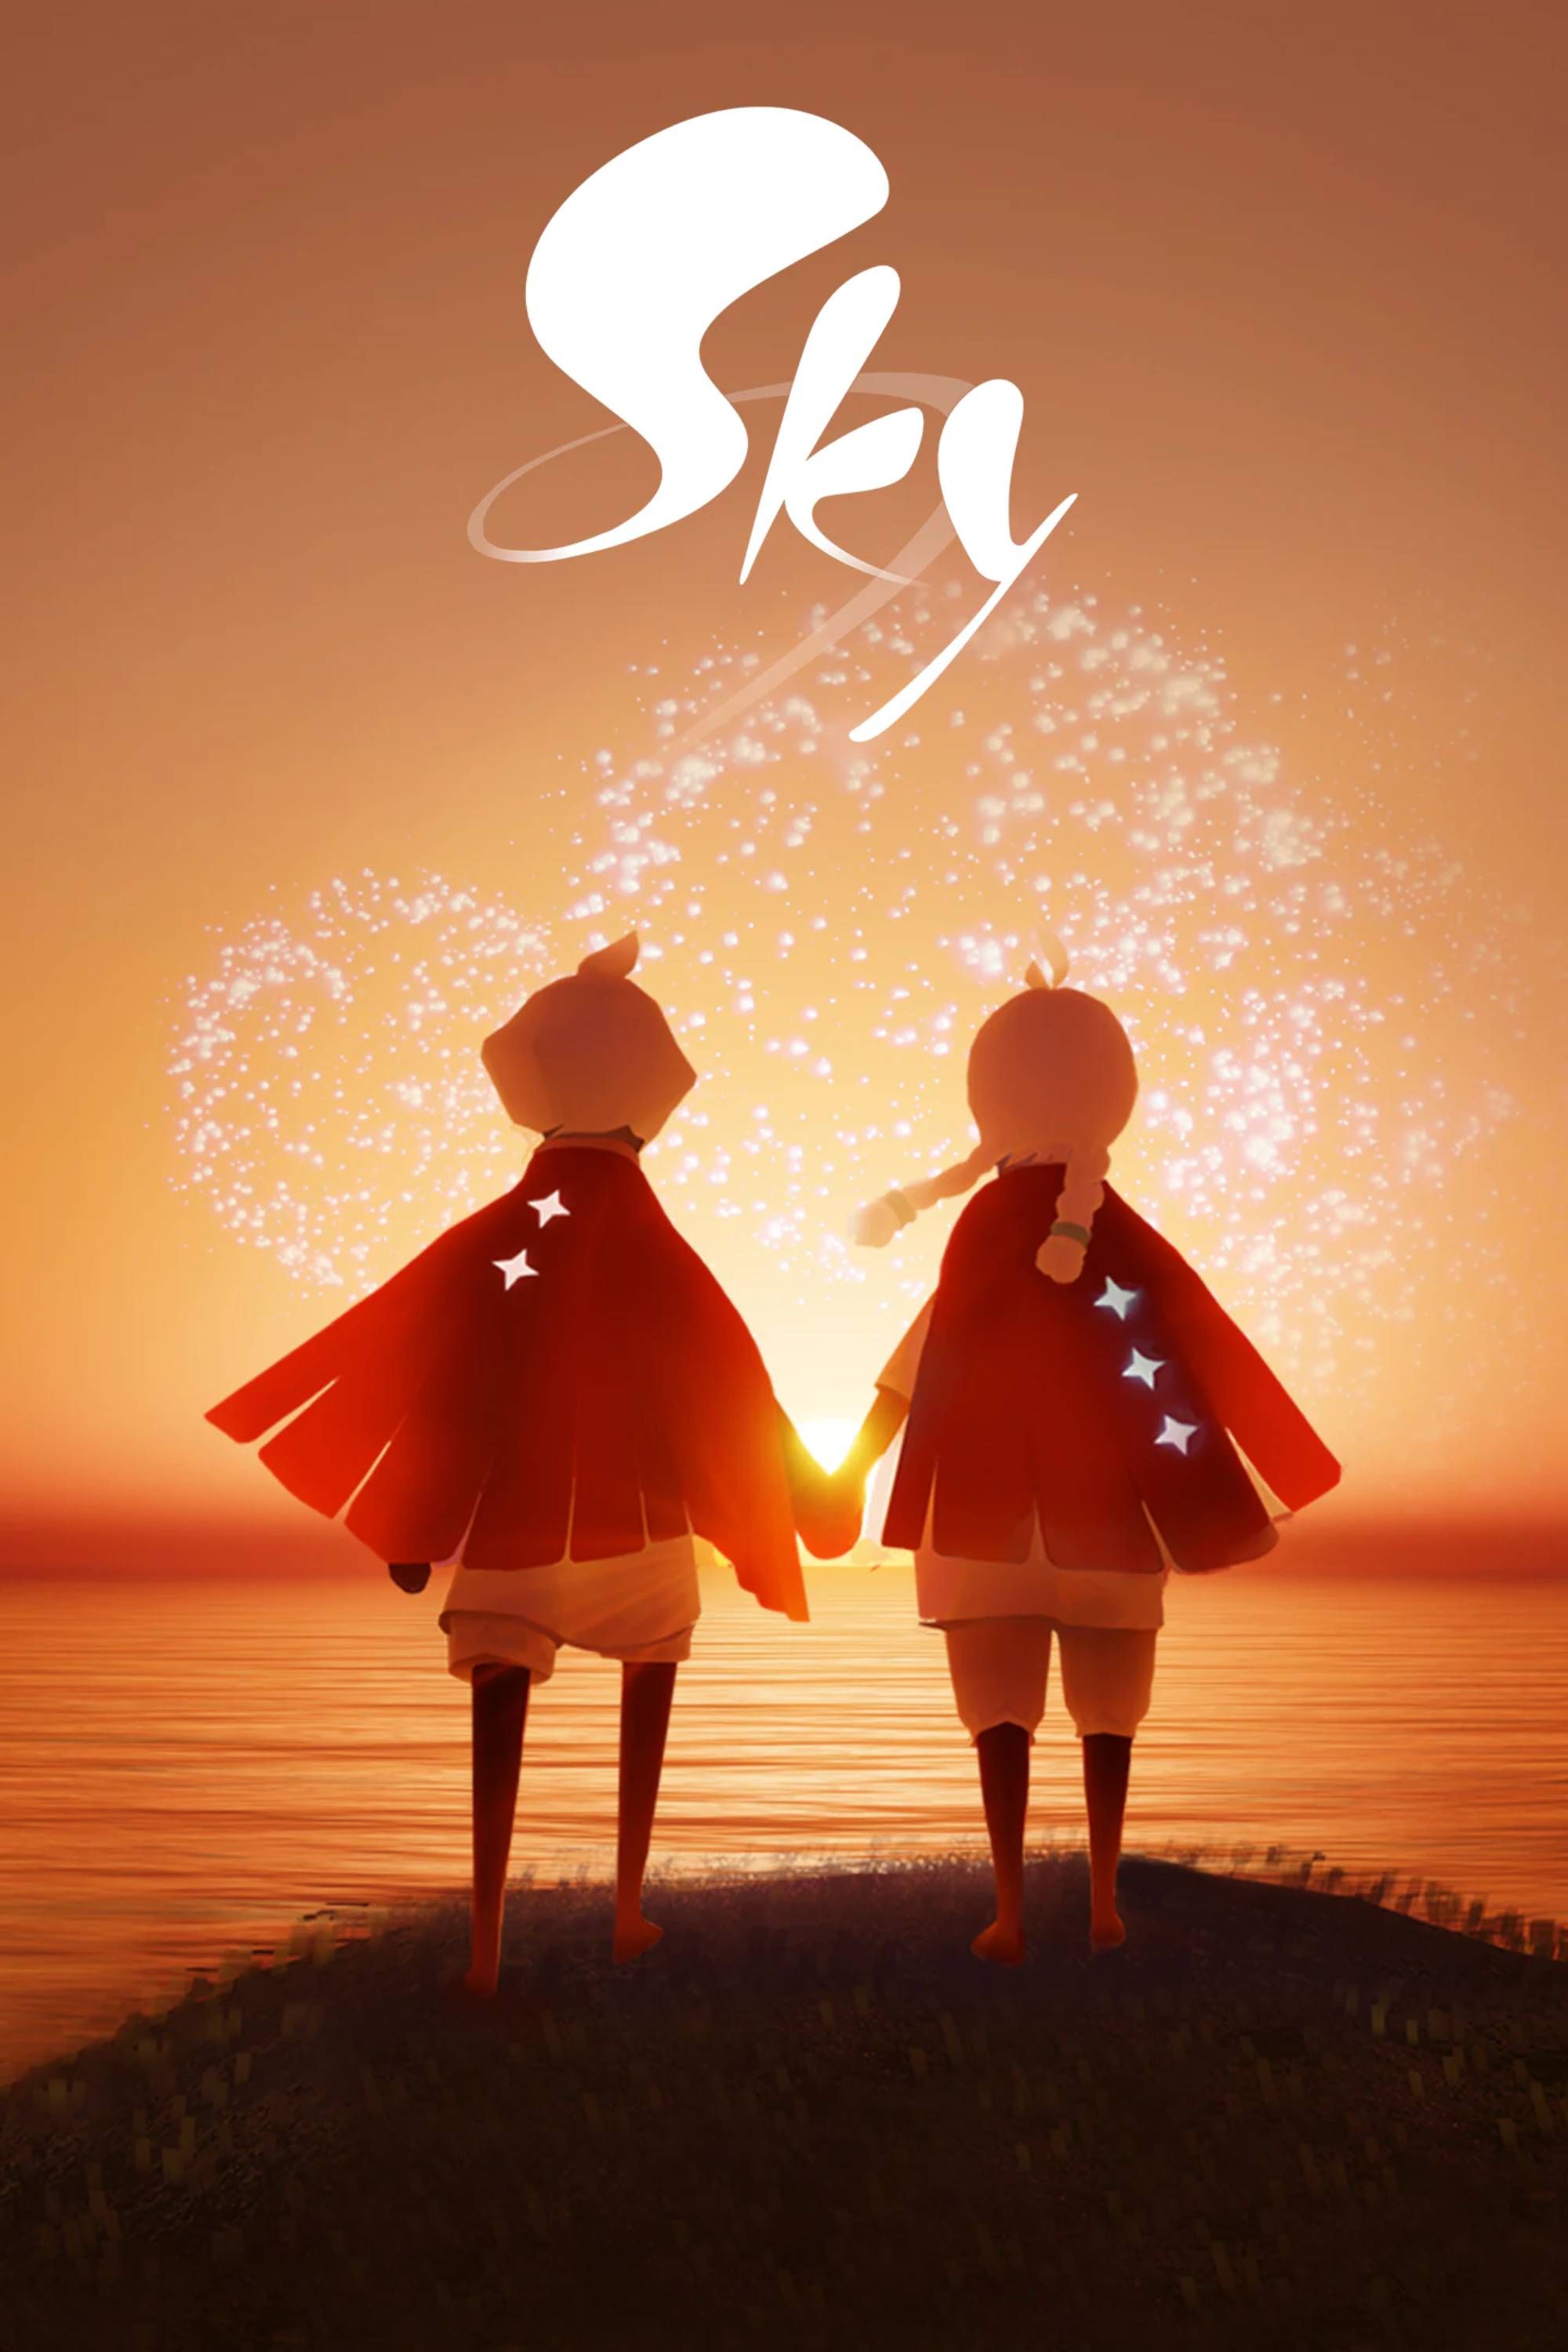 Sky_ Children of the Light